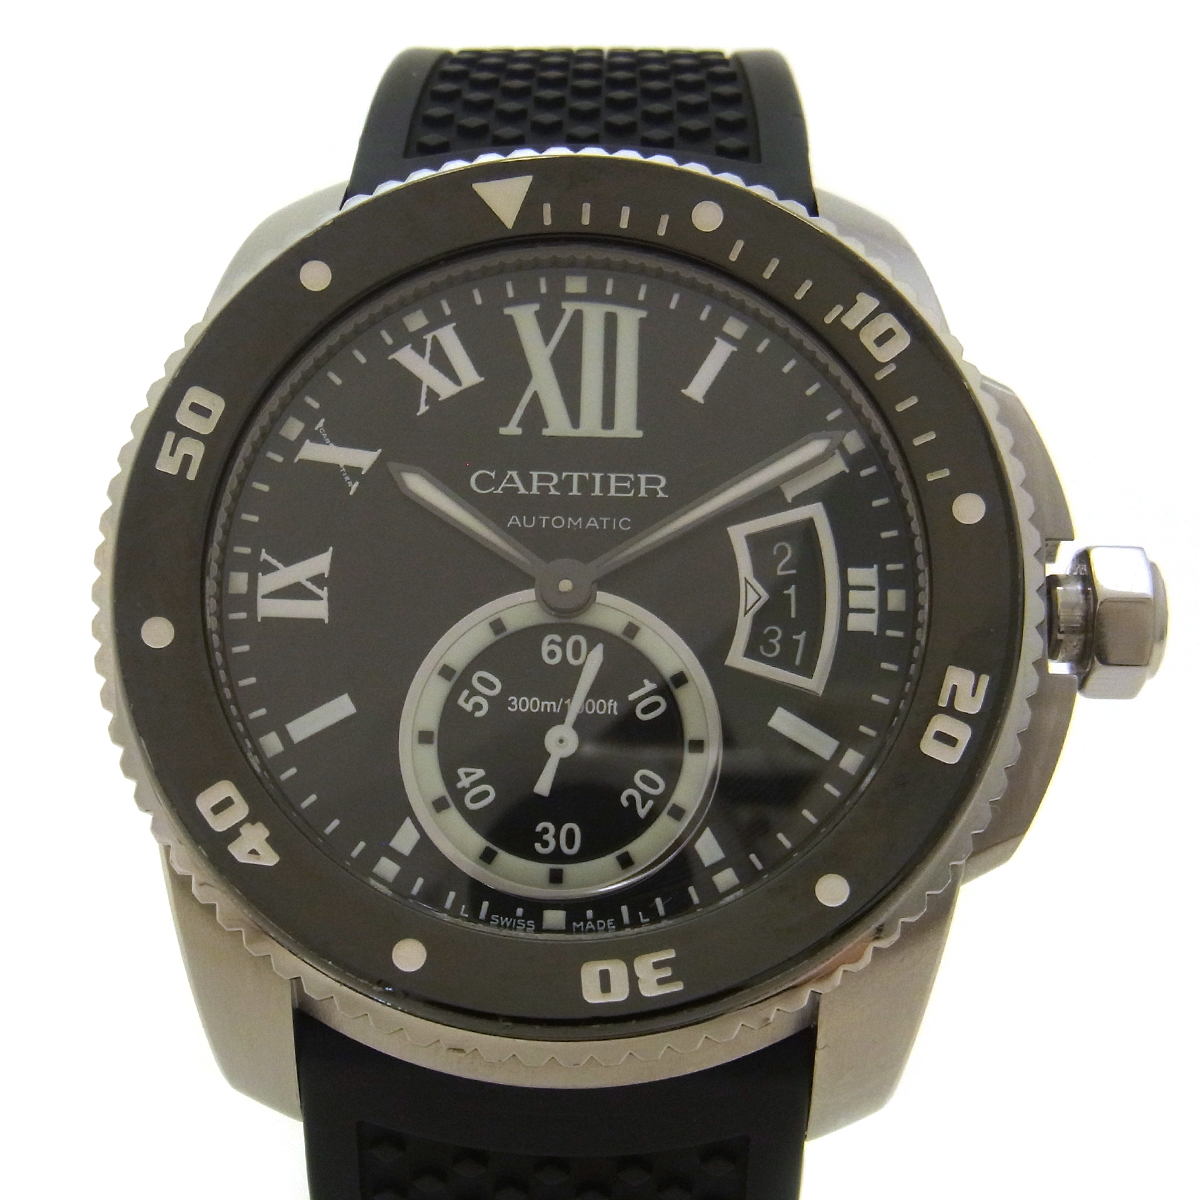 カルティエ(Cartier) カリブル ドゥ カルティエダイバー W7100056 メンズ腕時計 黒文字盤